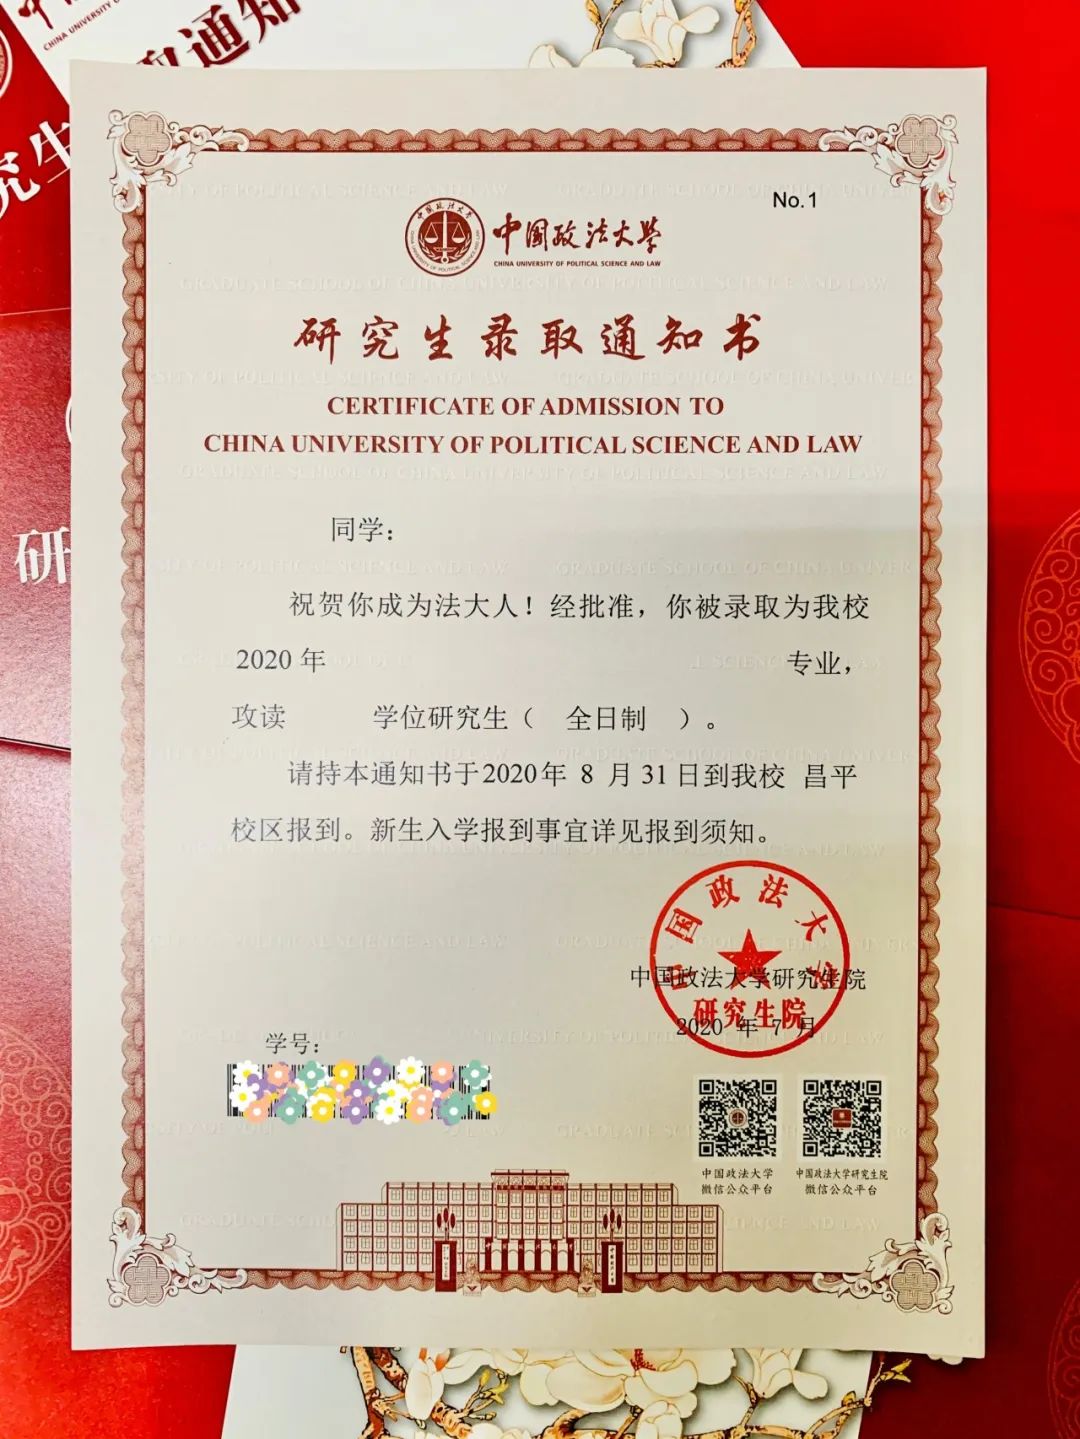 中国政法大学 各位考生: 我校2020年硕士研究生录取通知书已于7月20日